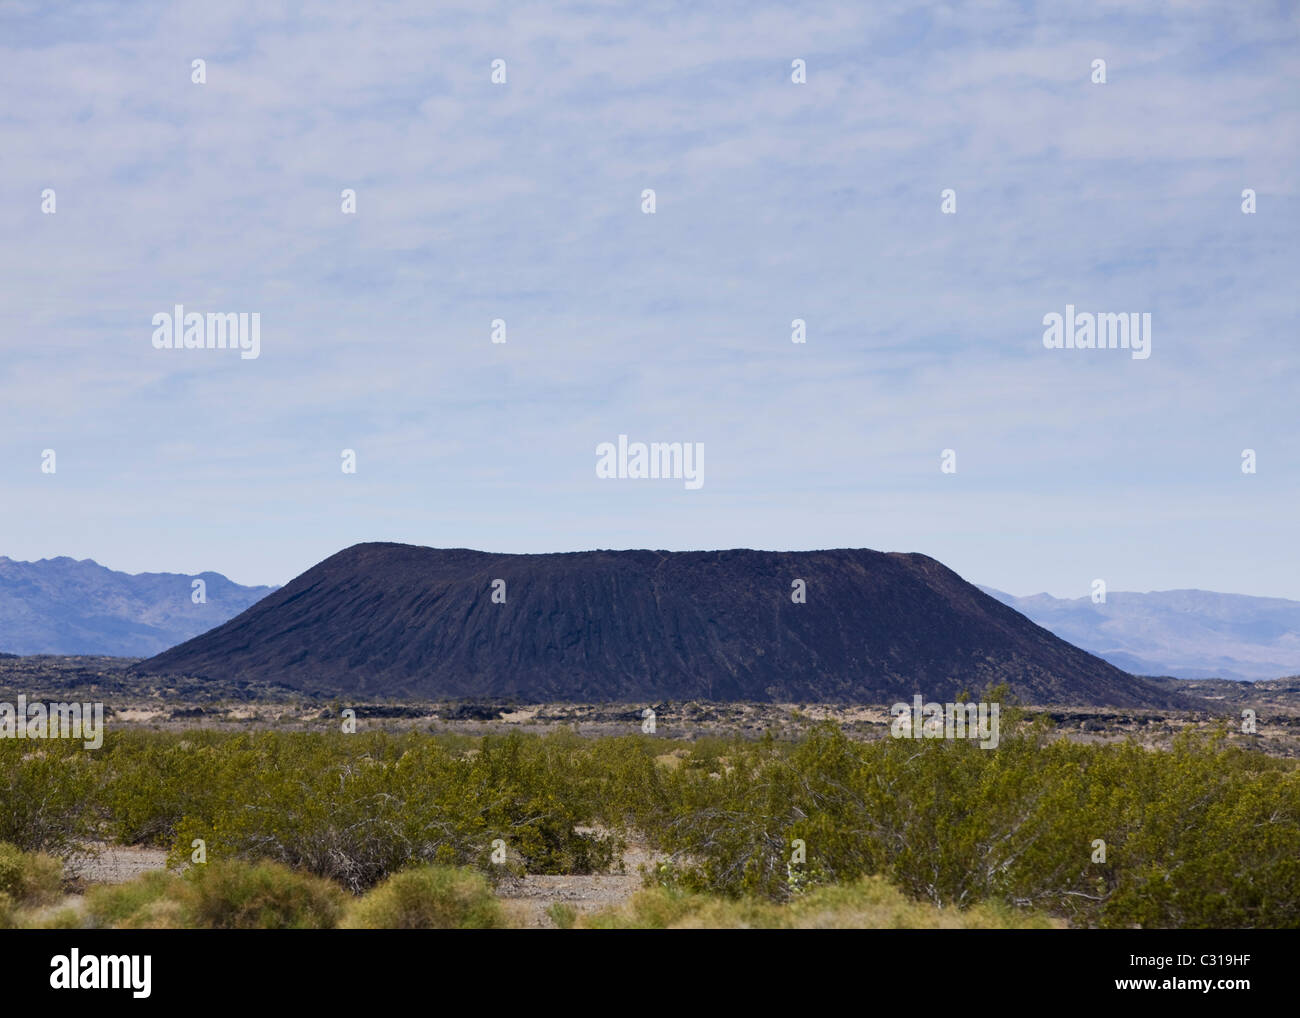 Domo de lava inactivos en el paisaje del desierto del sur de California Foto de stock